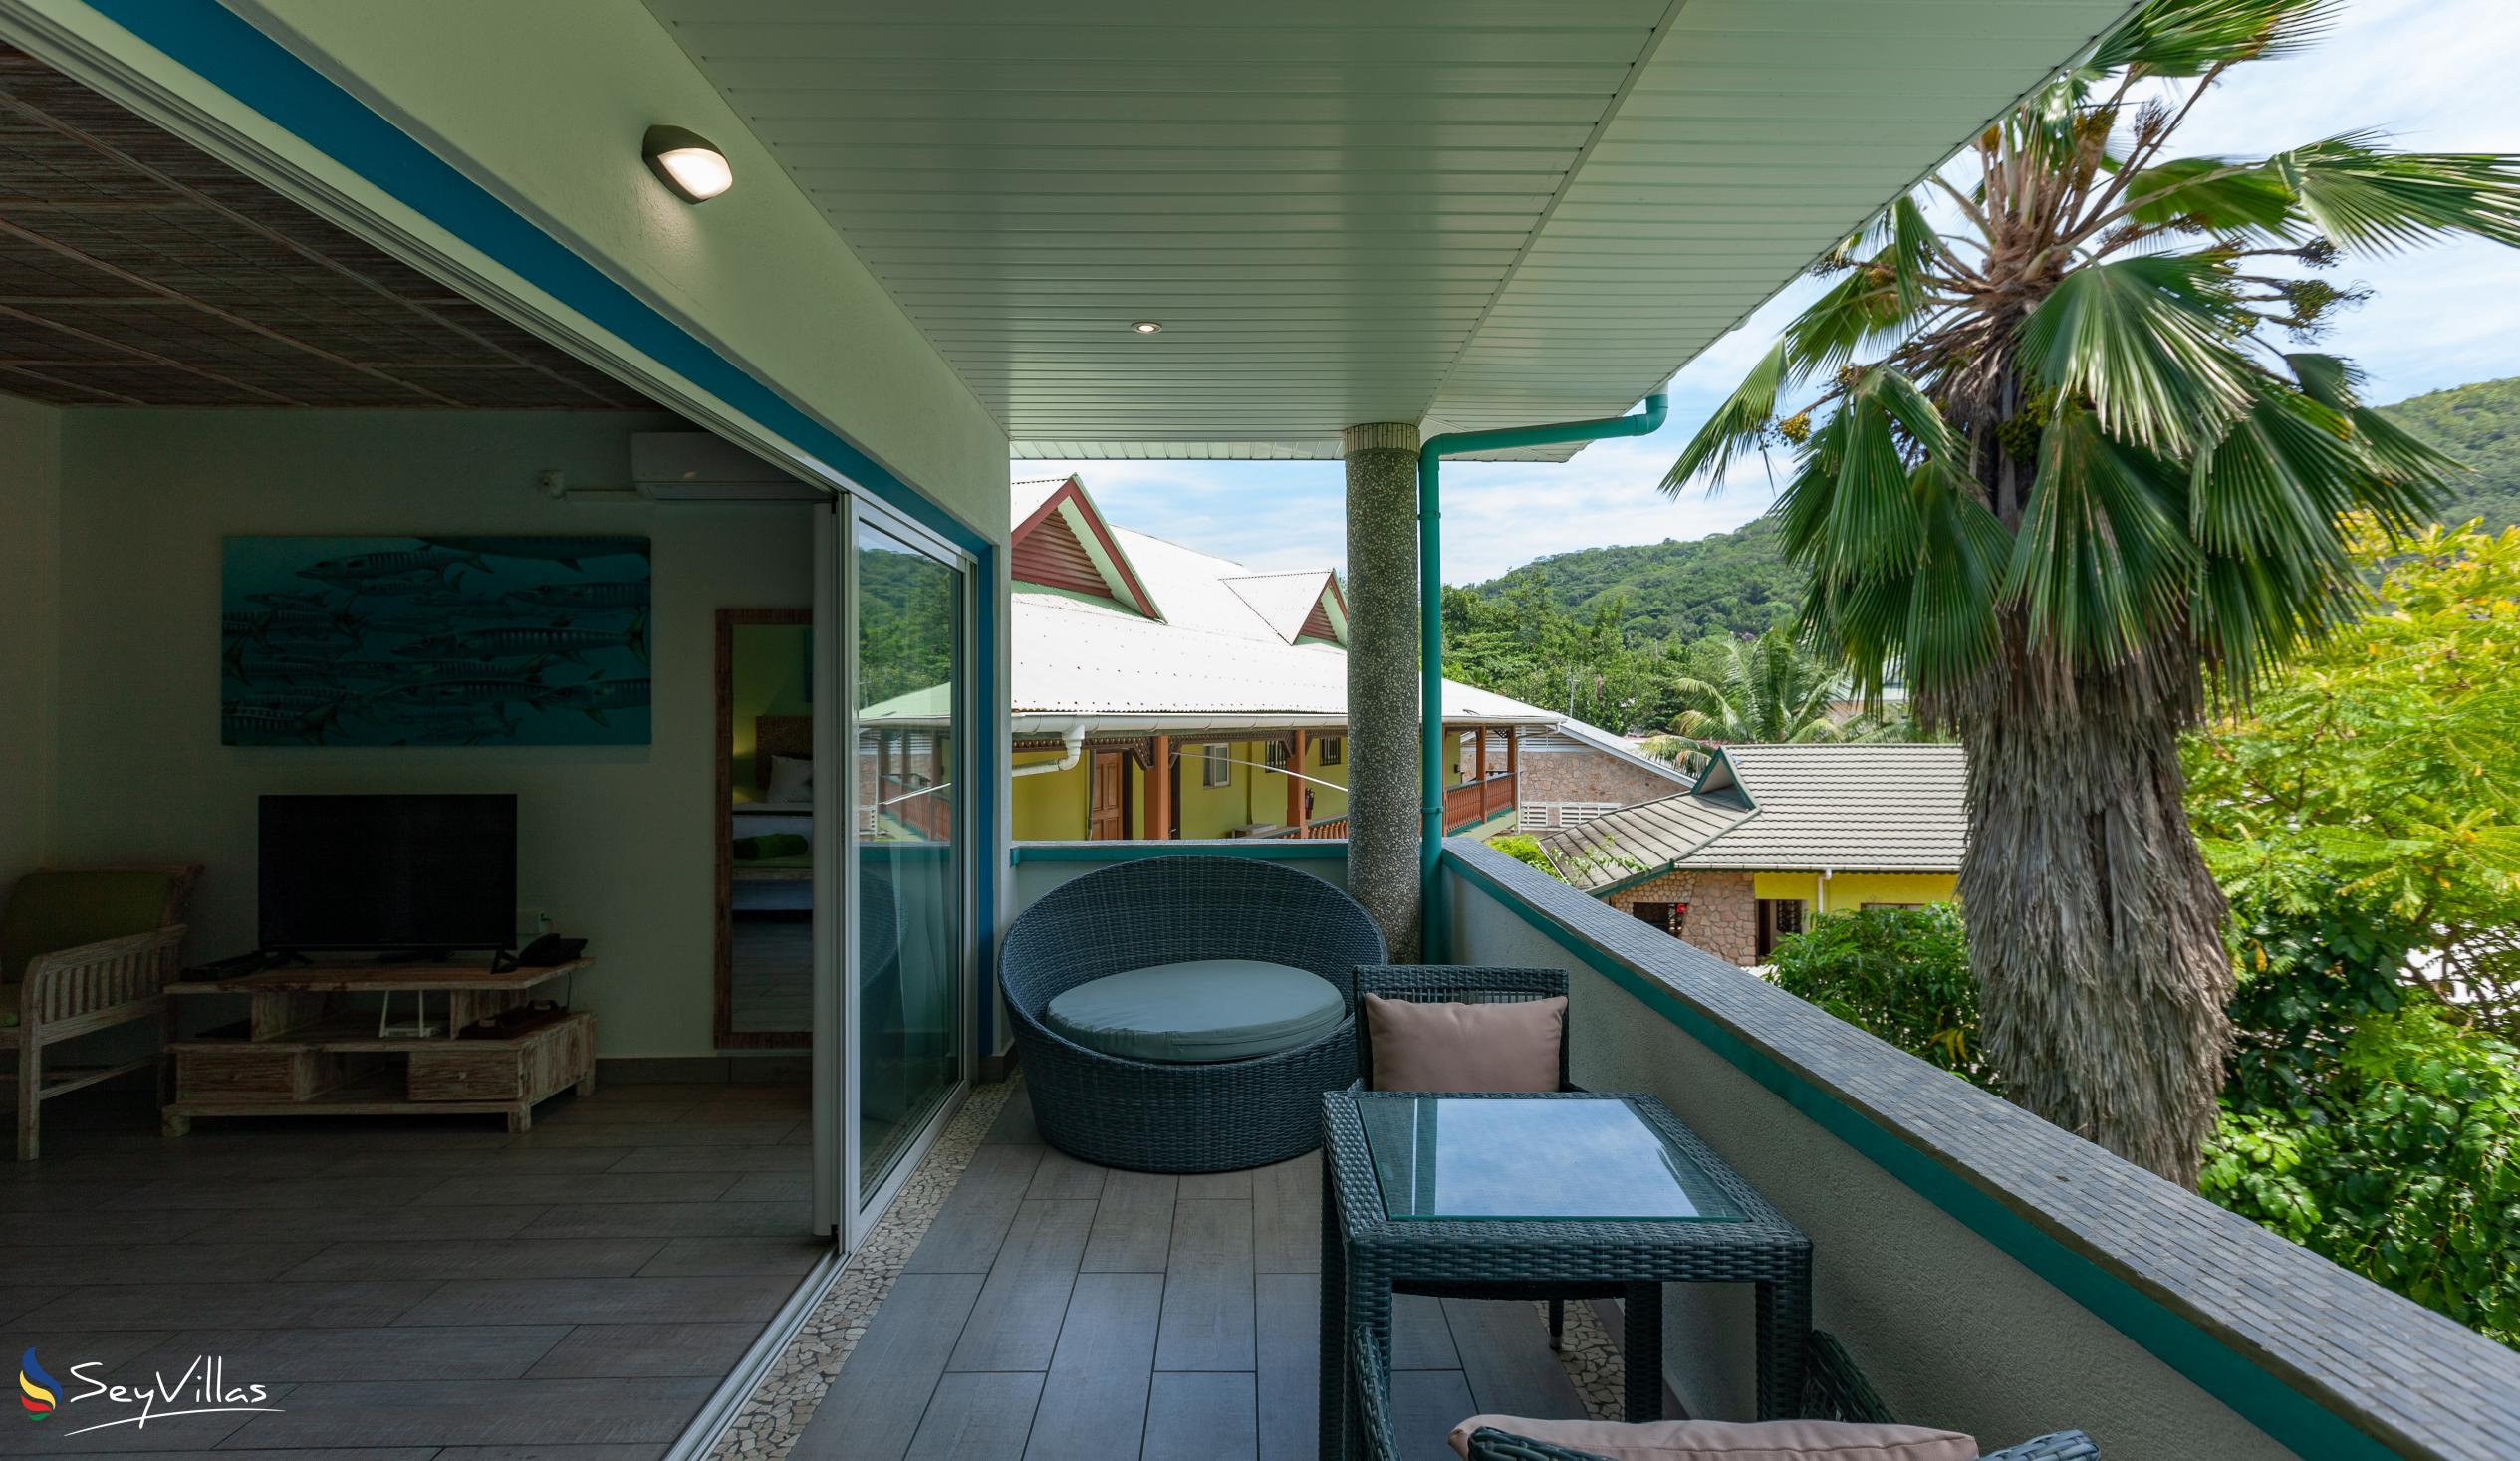 Photo 89: La Digue Self Catering - Studio Apartment Mountain View - La Digue (Seychelles)